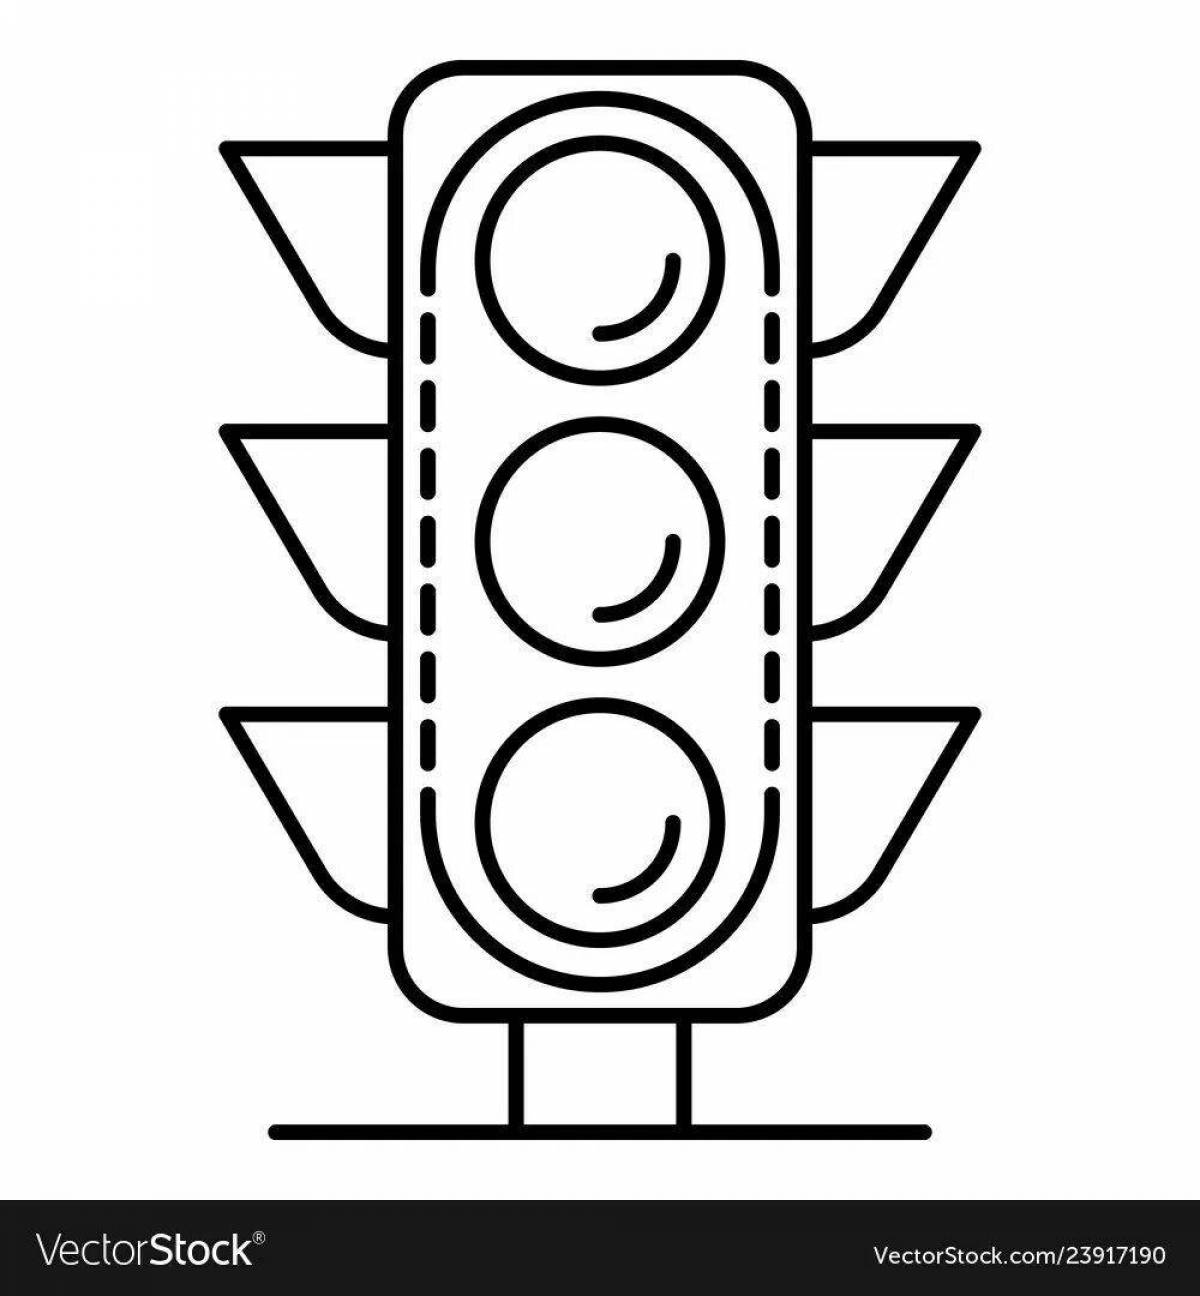 Playful traffic light for pedestrians